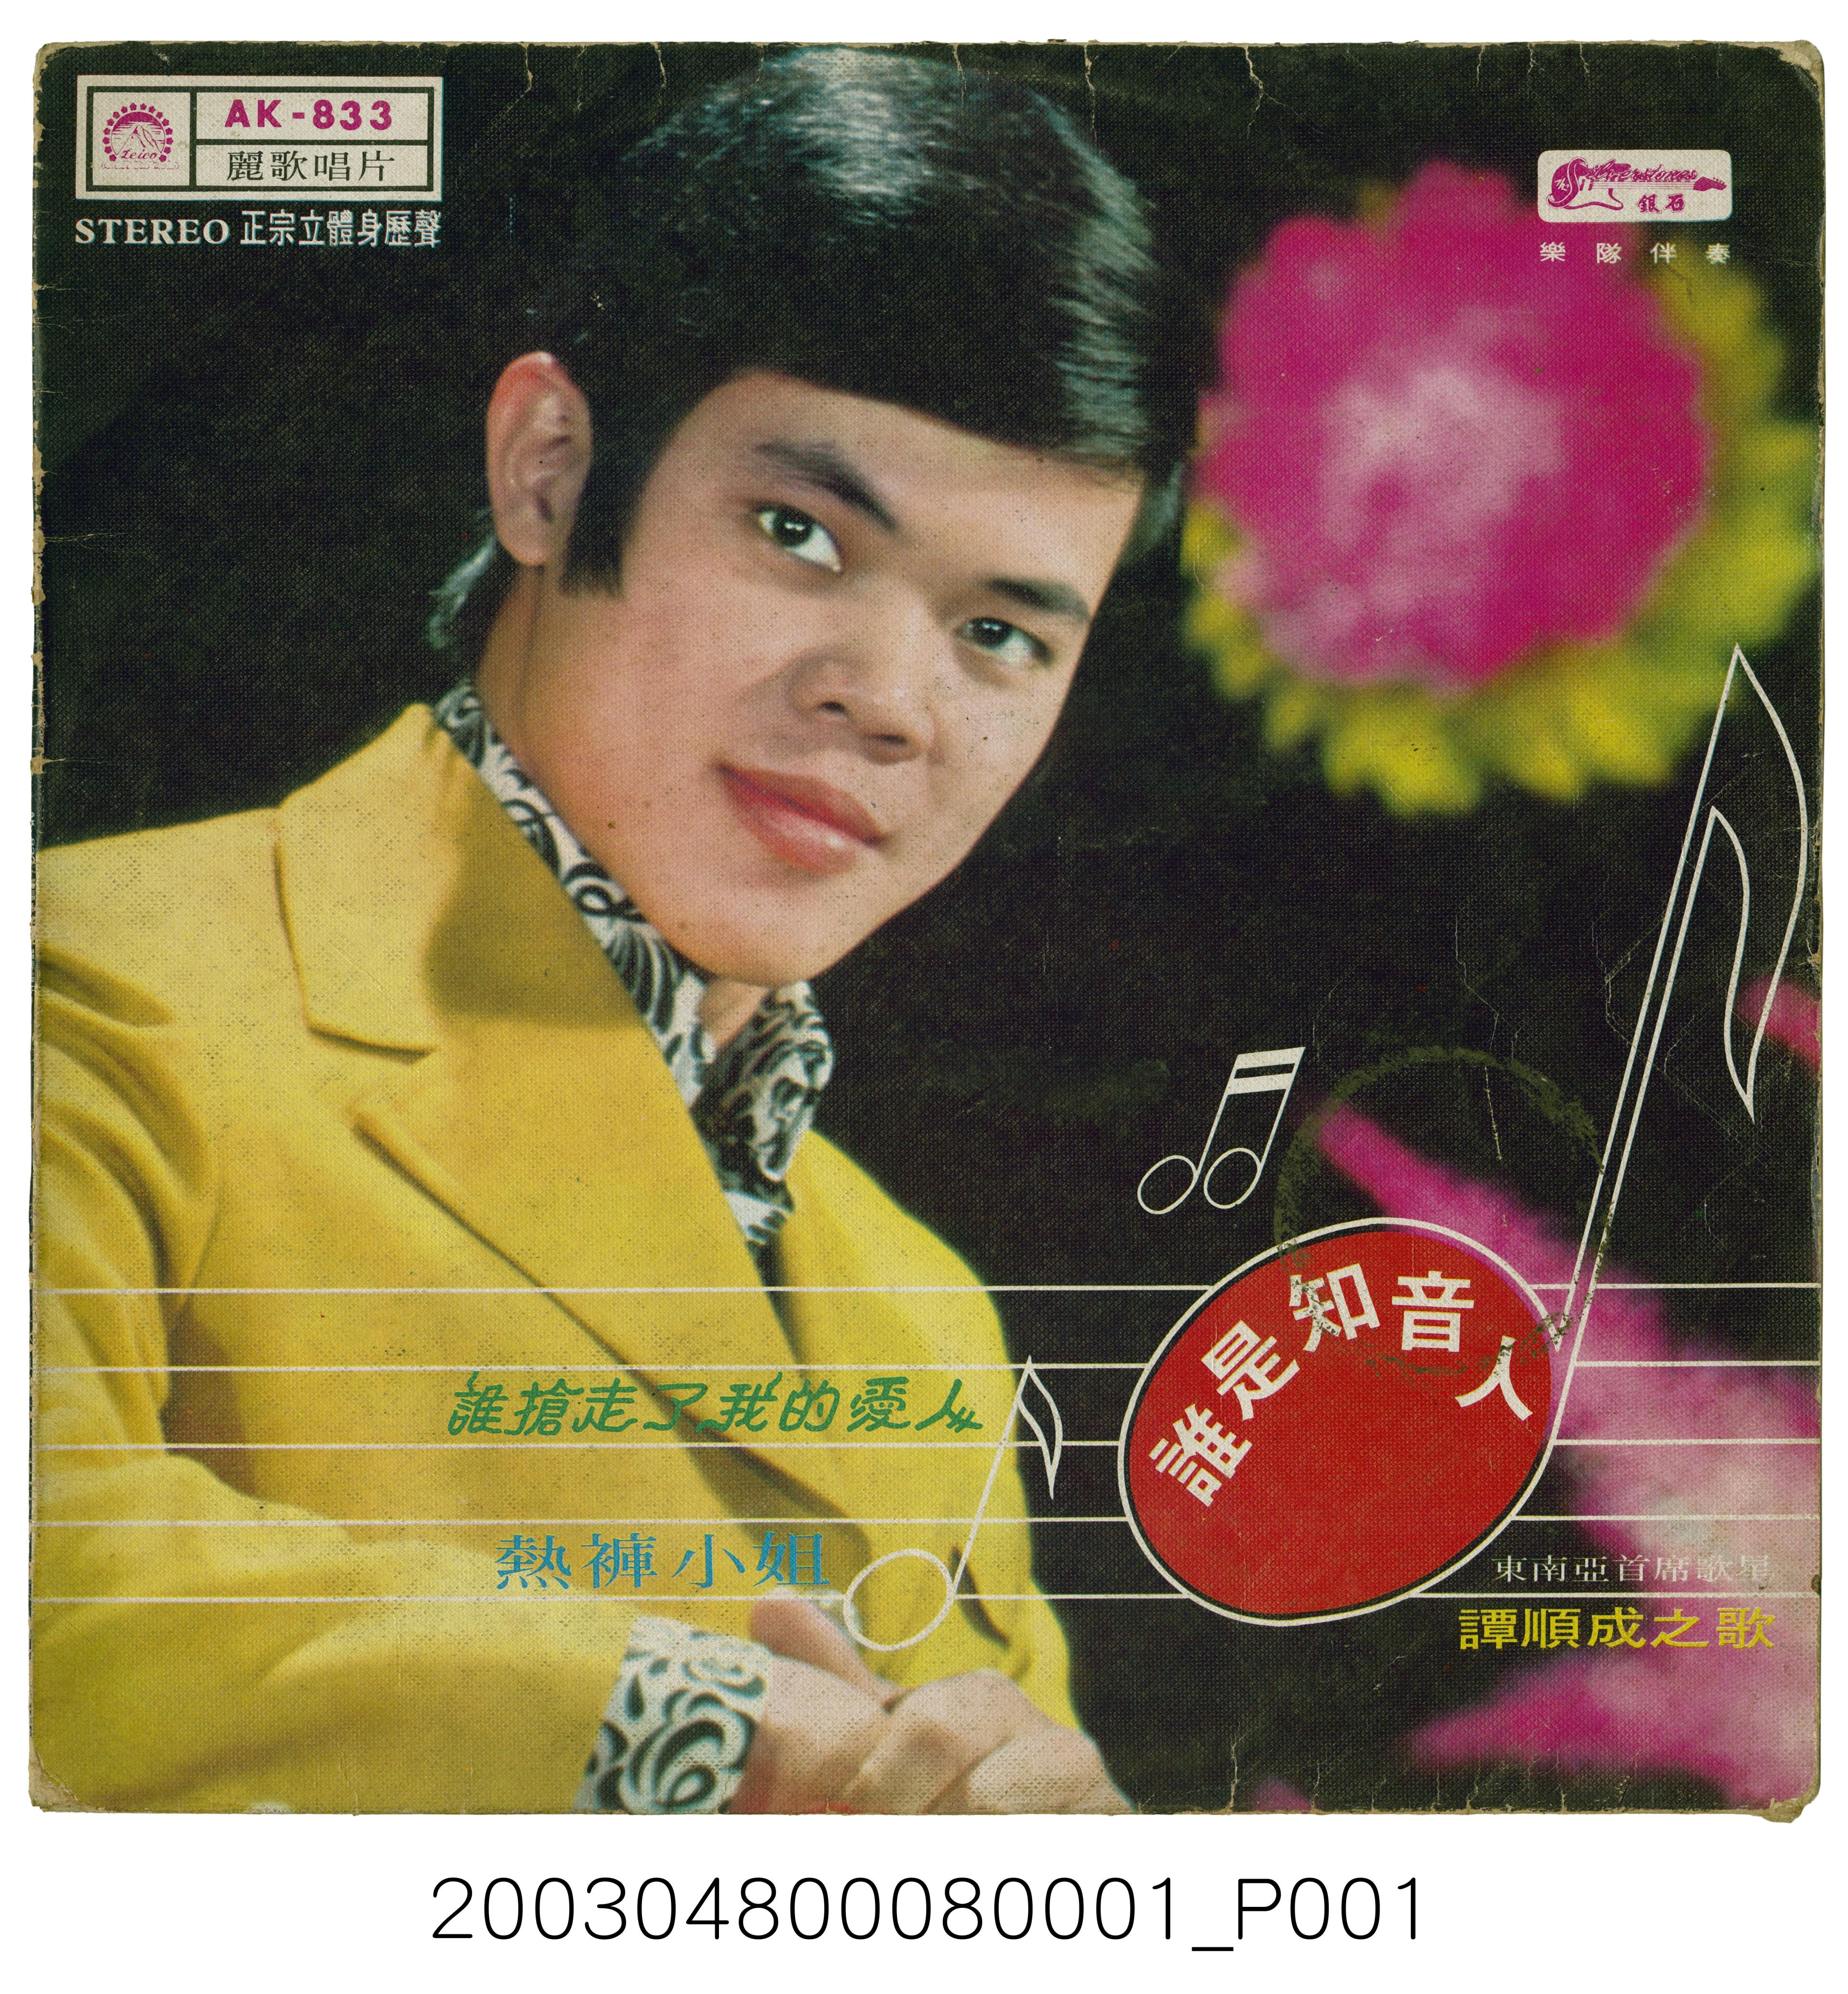 麗歌唱片公司出品編號「AK-833」國語歌曲專輯《譚順成之歌》唱片封套 (共2張)